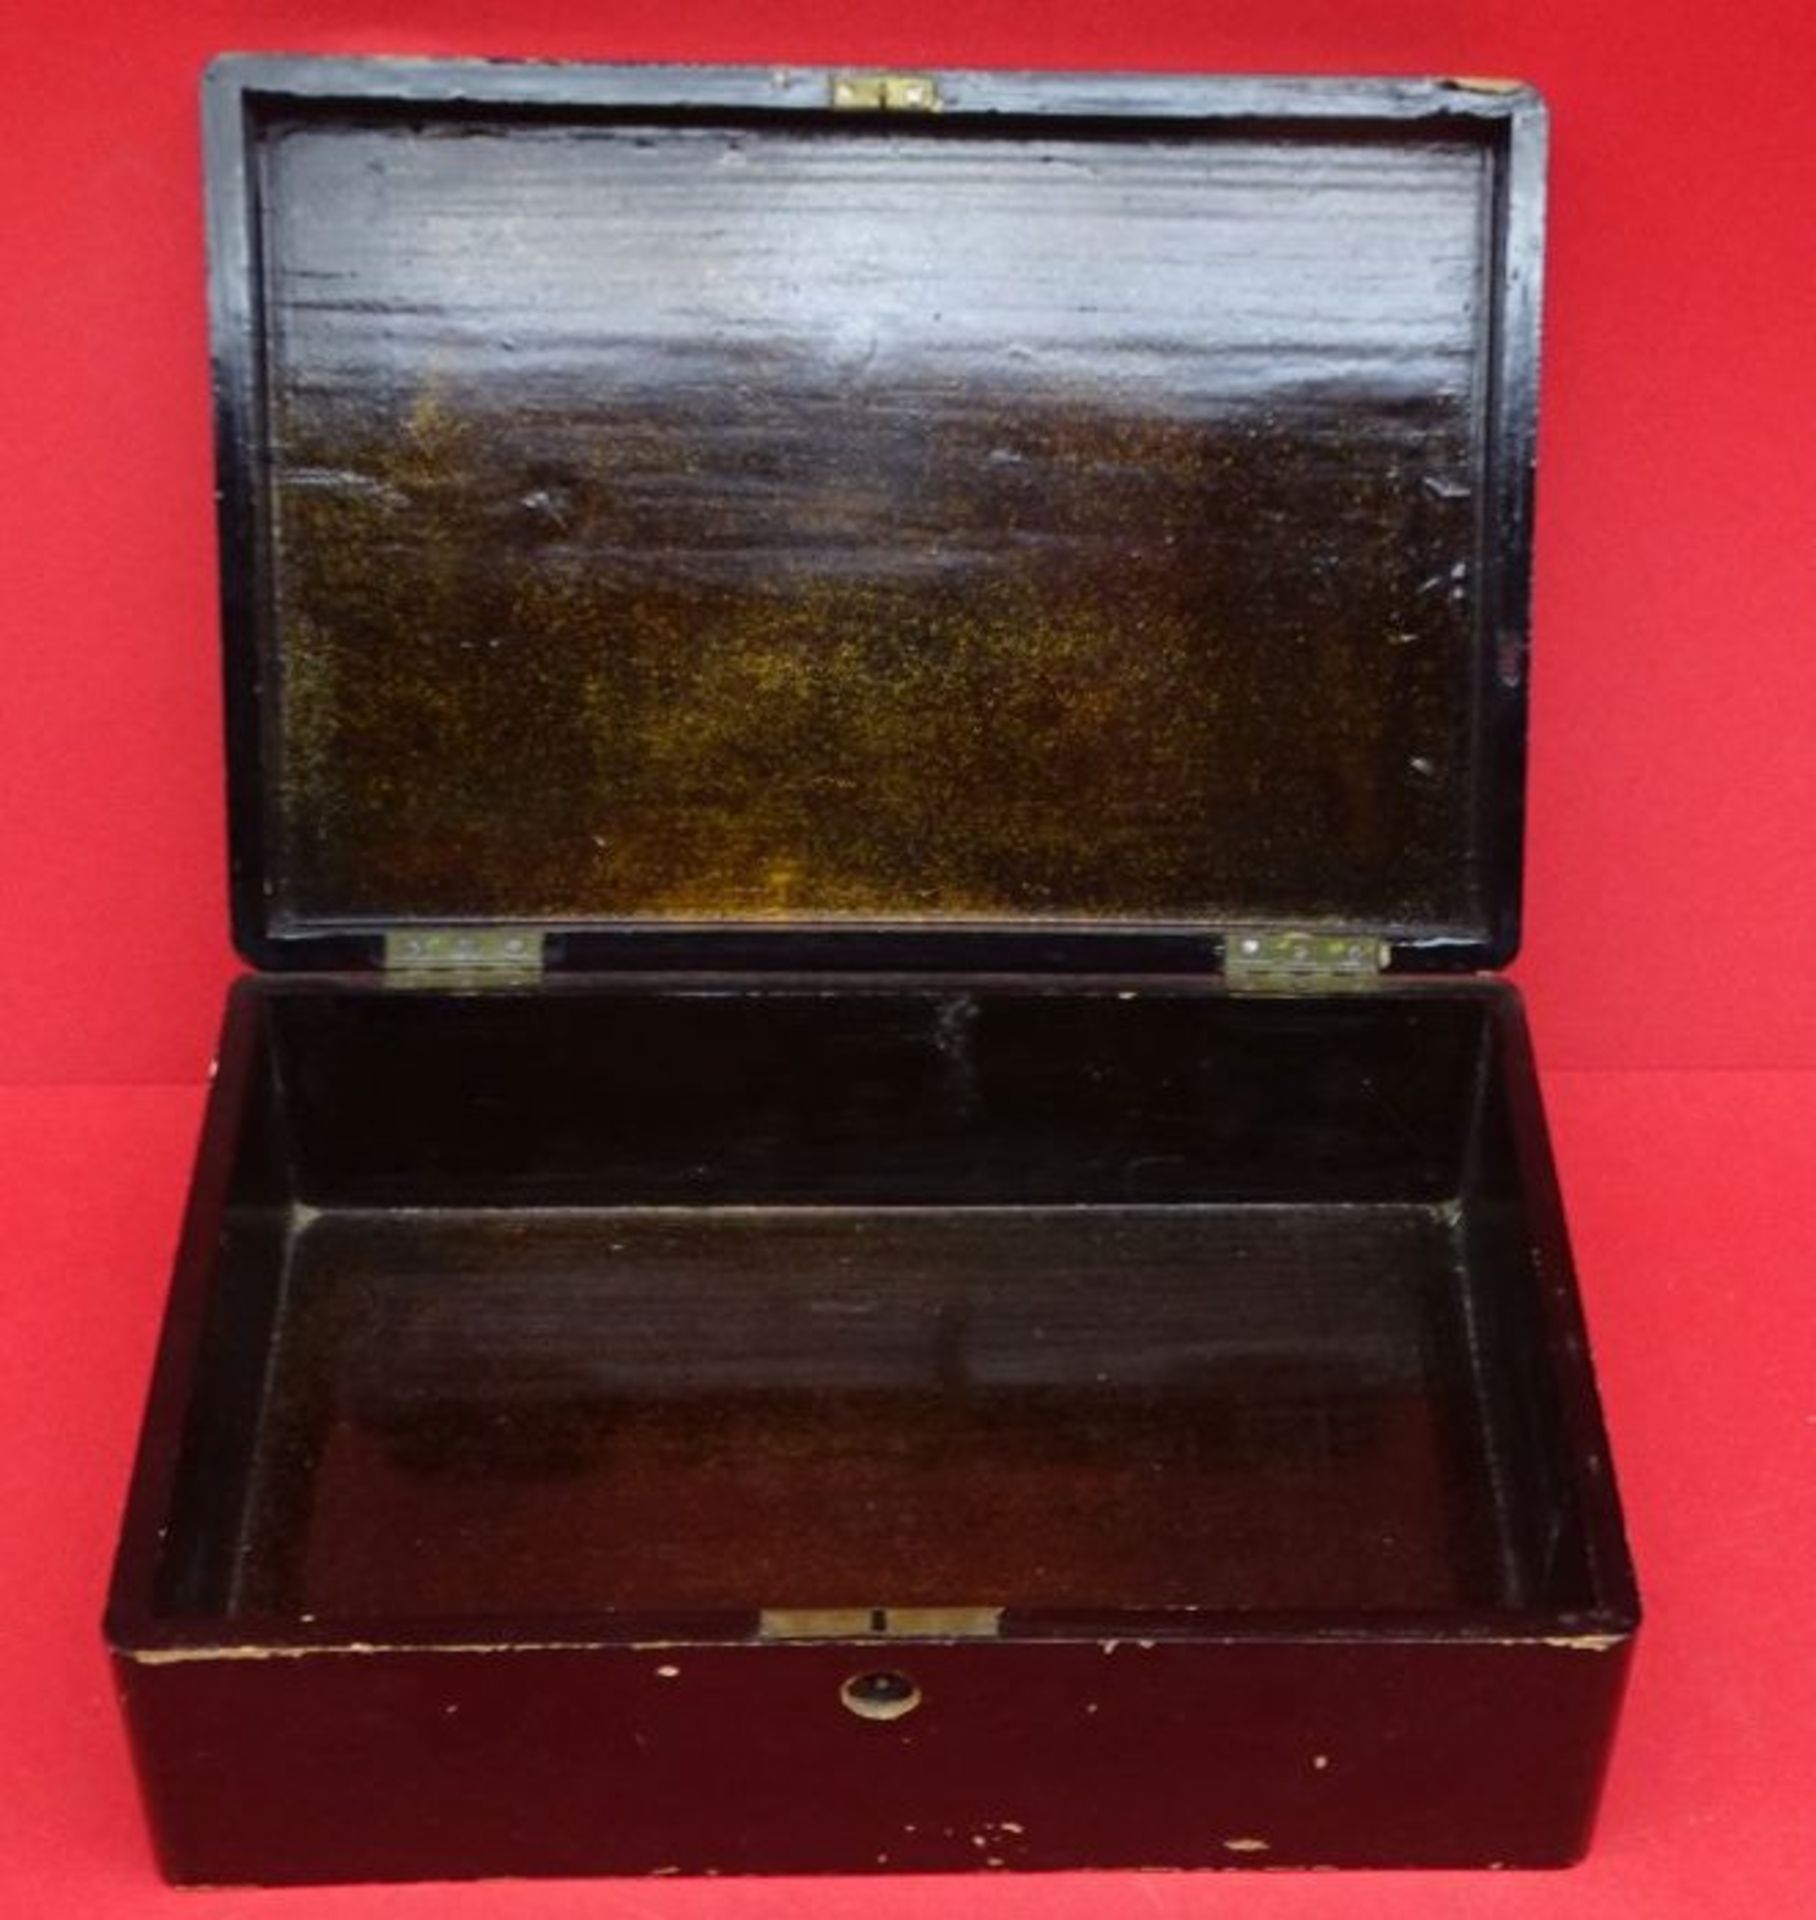 Schwarzlackdose "China" Goldmalerei, starke Gebrauchsspuren, H-8 cm, 16x23 c m - Bild 3 aus 5